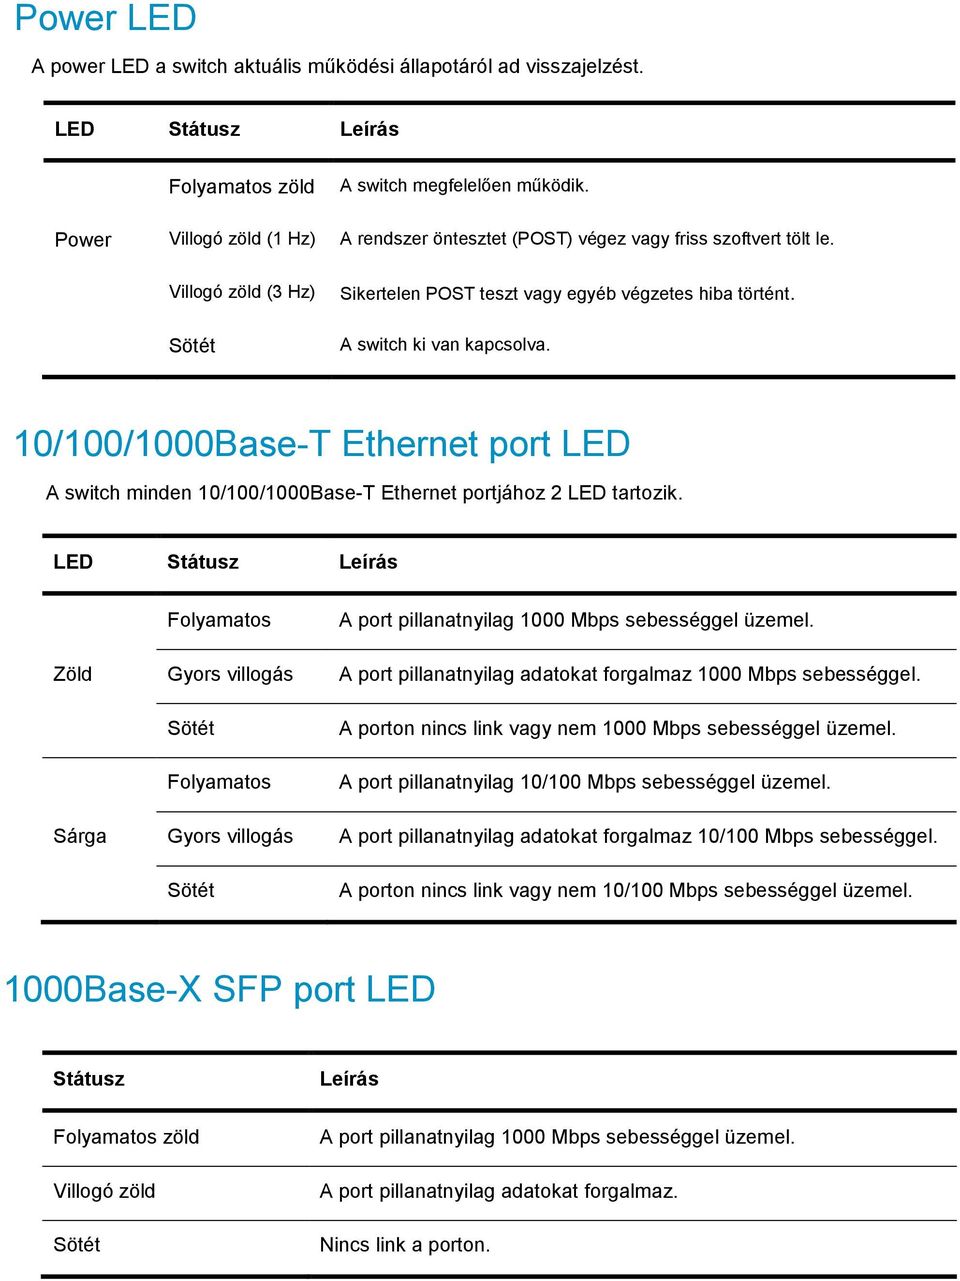 10/100/1000Base-T Ethernet port LED A switch minden 10/100/1000Base-T Ethernet portjához 2 LED tartozik. LED Státusz Leírás Folyamatos A port pillanatnyilag 1000 Mbps sebességgel üzemel.